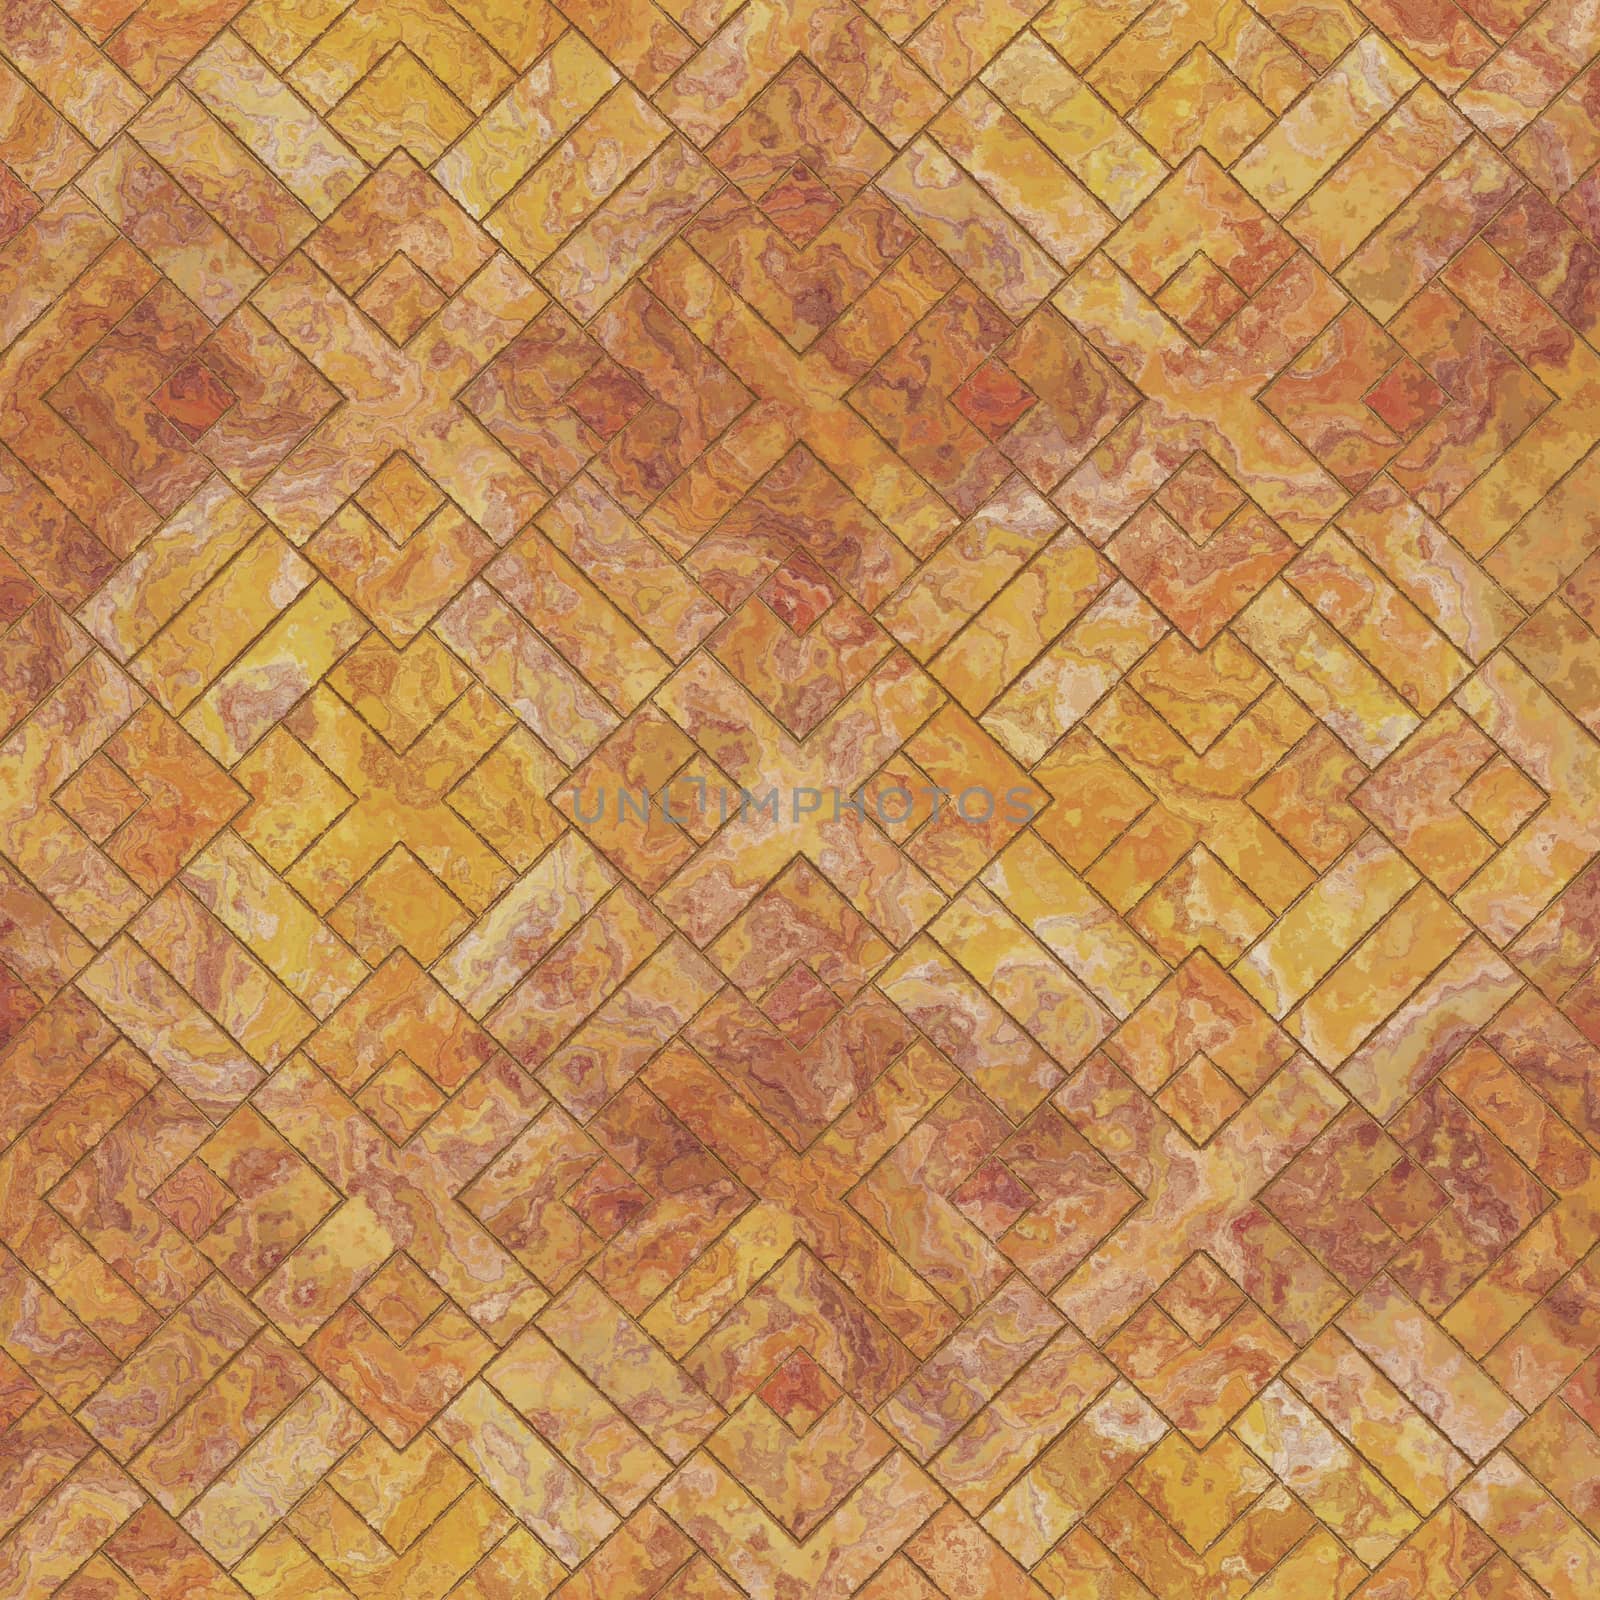 2d illustration of a sandstone tiles background